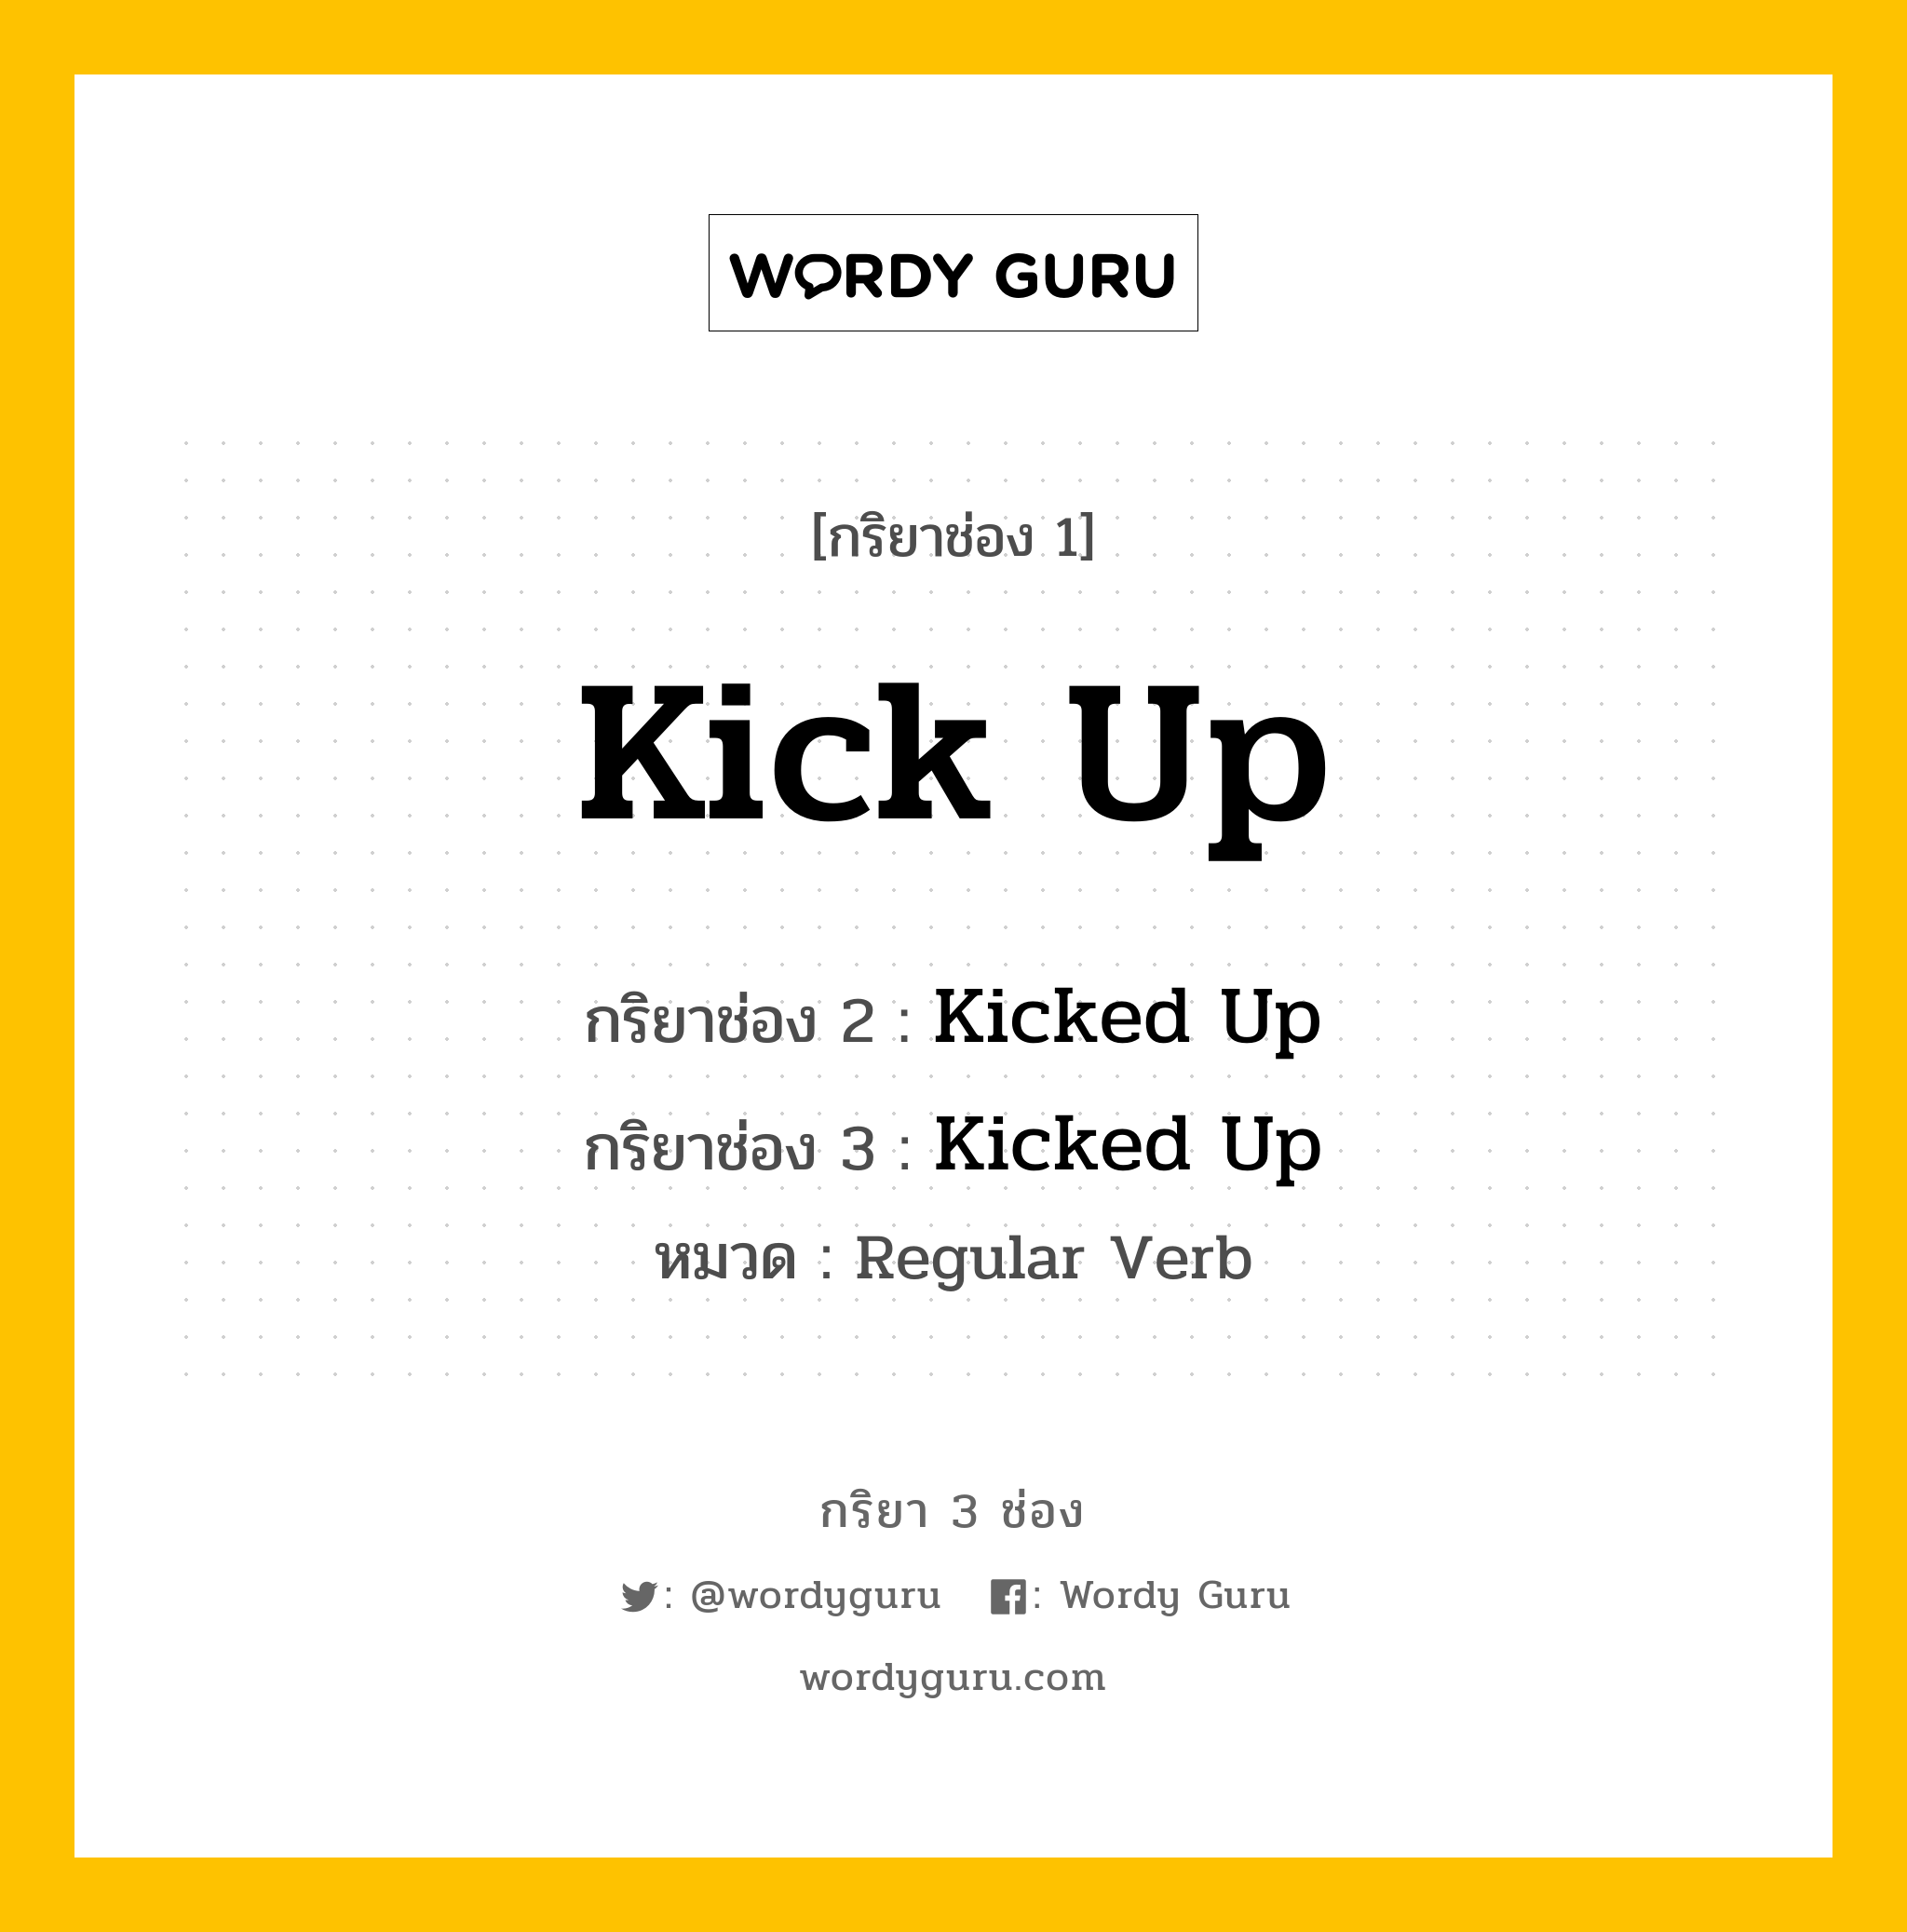 กริยา 3 ช่อง: Kick Up ช่อง 2 Kick Up ช่อง 3 คืออะไร, กริยาช่อง 1 Kick Up กริยาช่อง 2 Kicked Up กริยาช่อง 3 Kicked Up หมวด Regular Verb หมวด Regular Verb